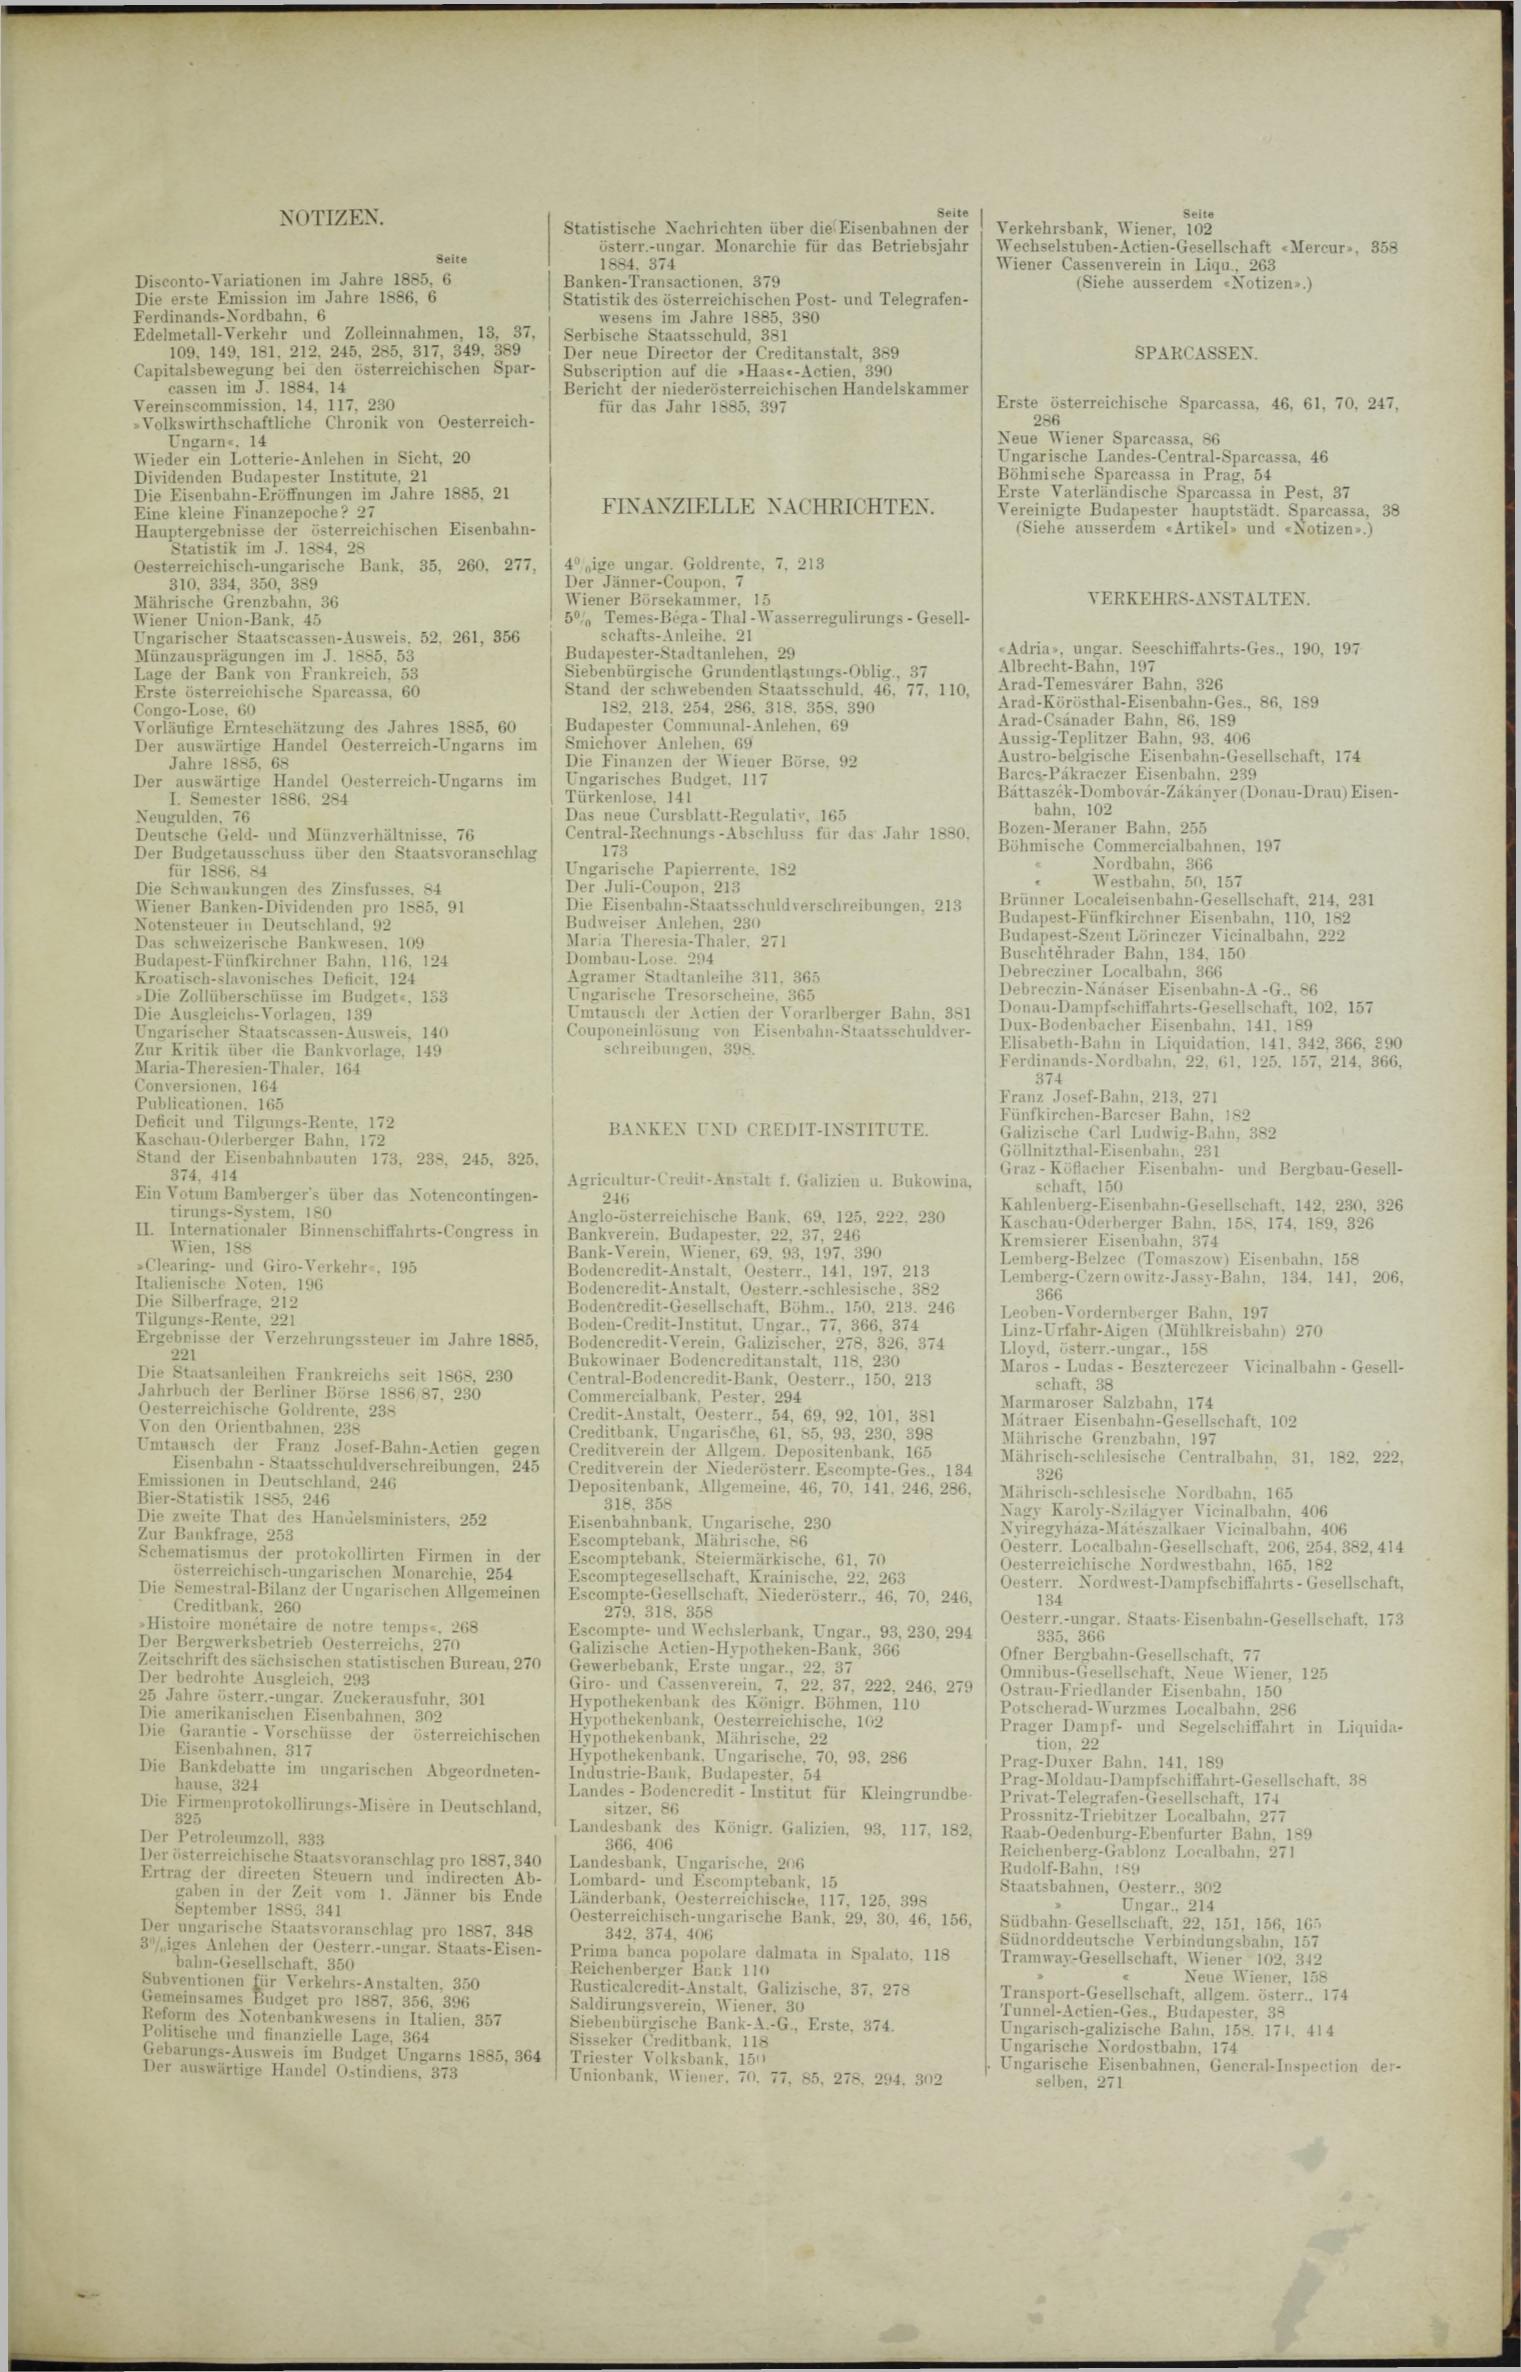 Der Tresor 07.10.1886 - Seite 11